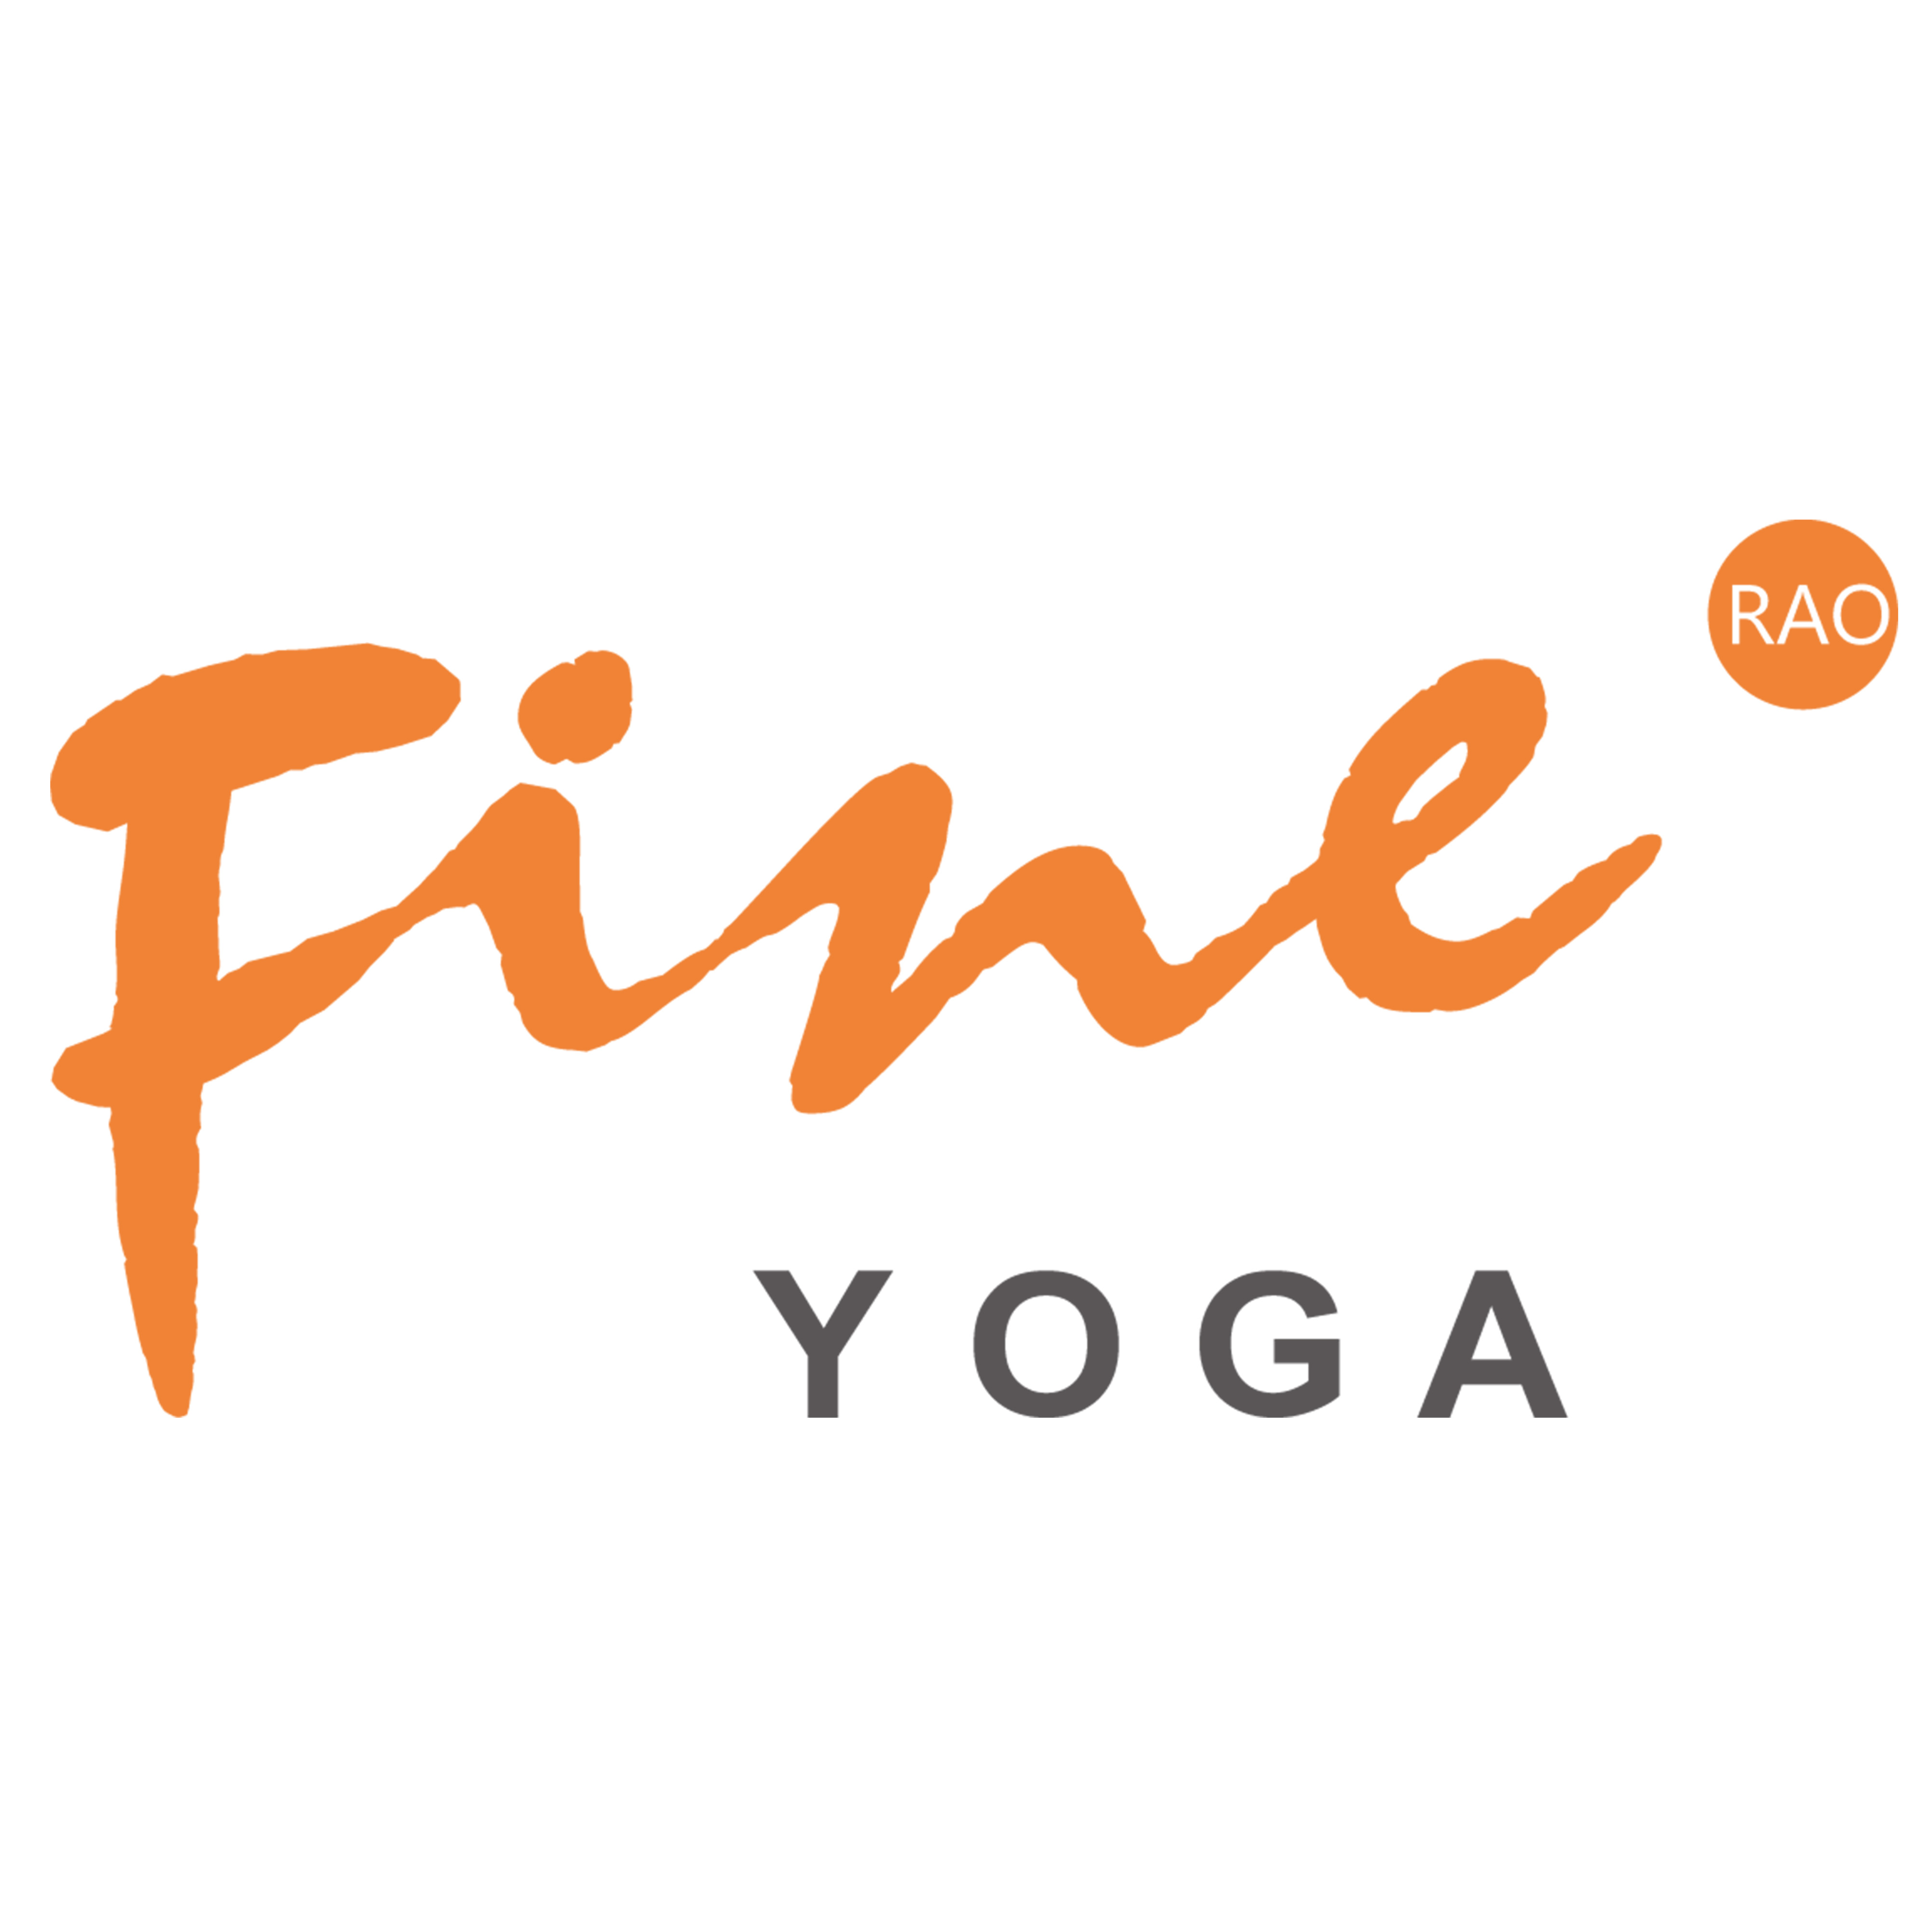 梵音瑜伽 logo图片